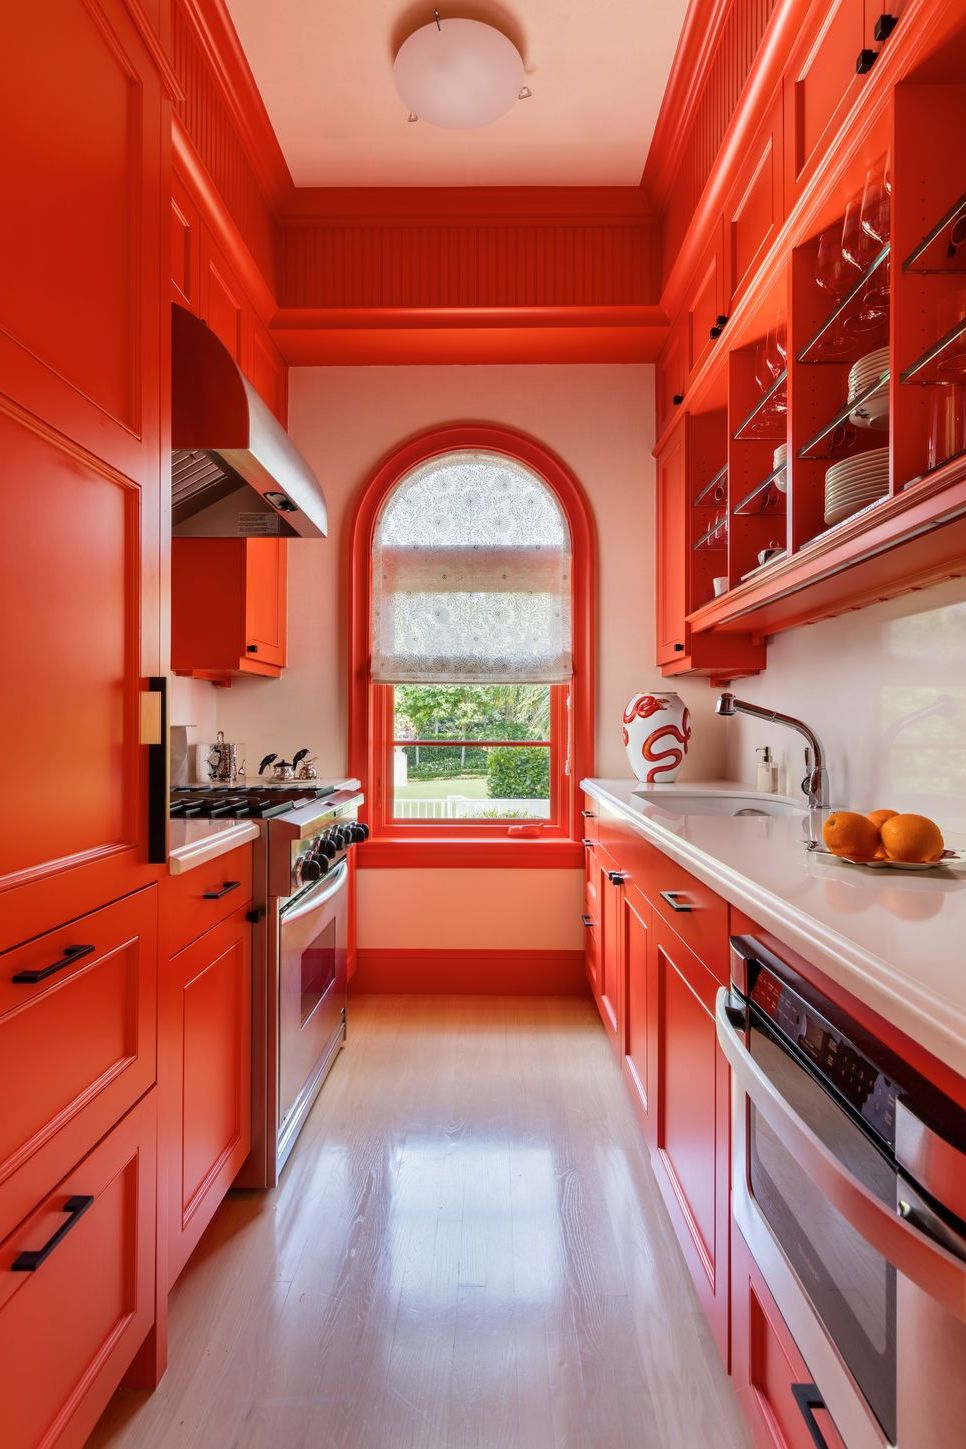 orange kitchen